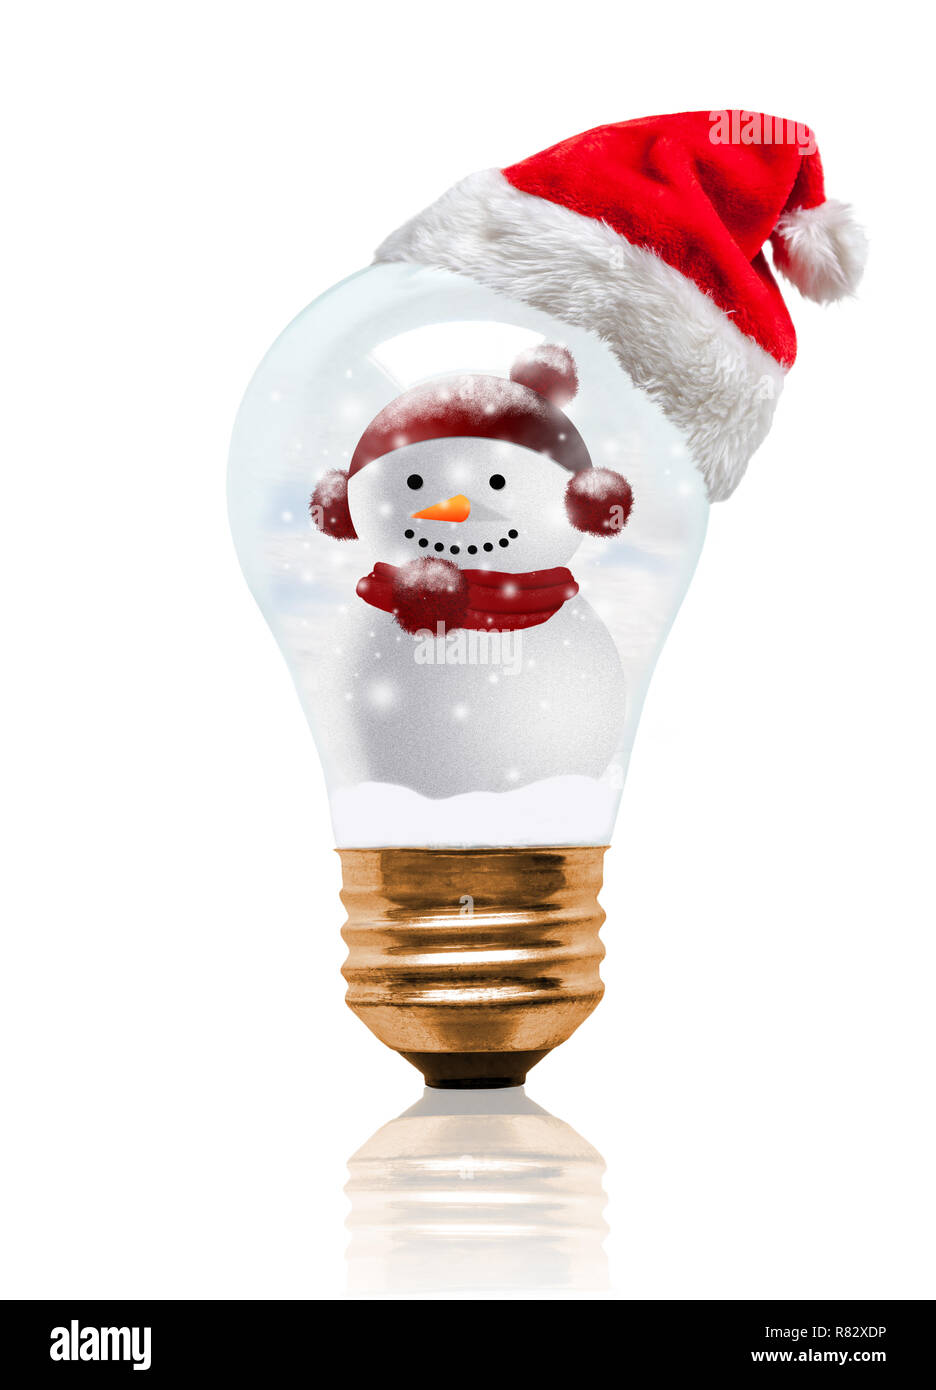 Snow globe Light bulb wearing Santa hat avec bonhomme de neige décoré et copiez l'espace. Saison de Noël brillant et lumineux Nouvelle Année. Banque D'Images